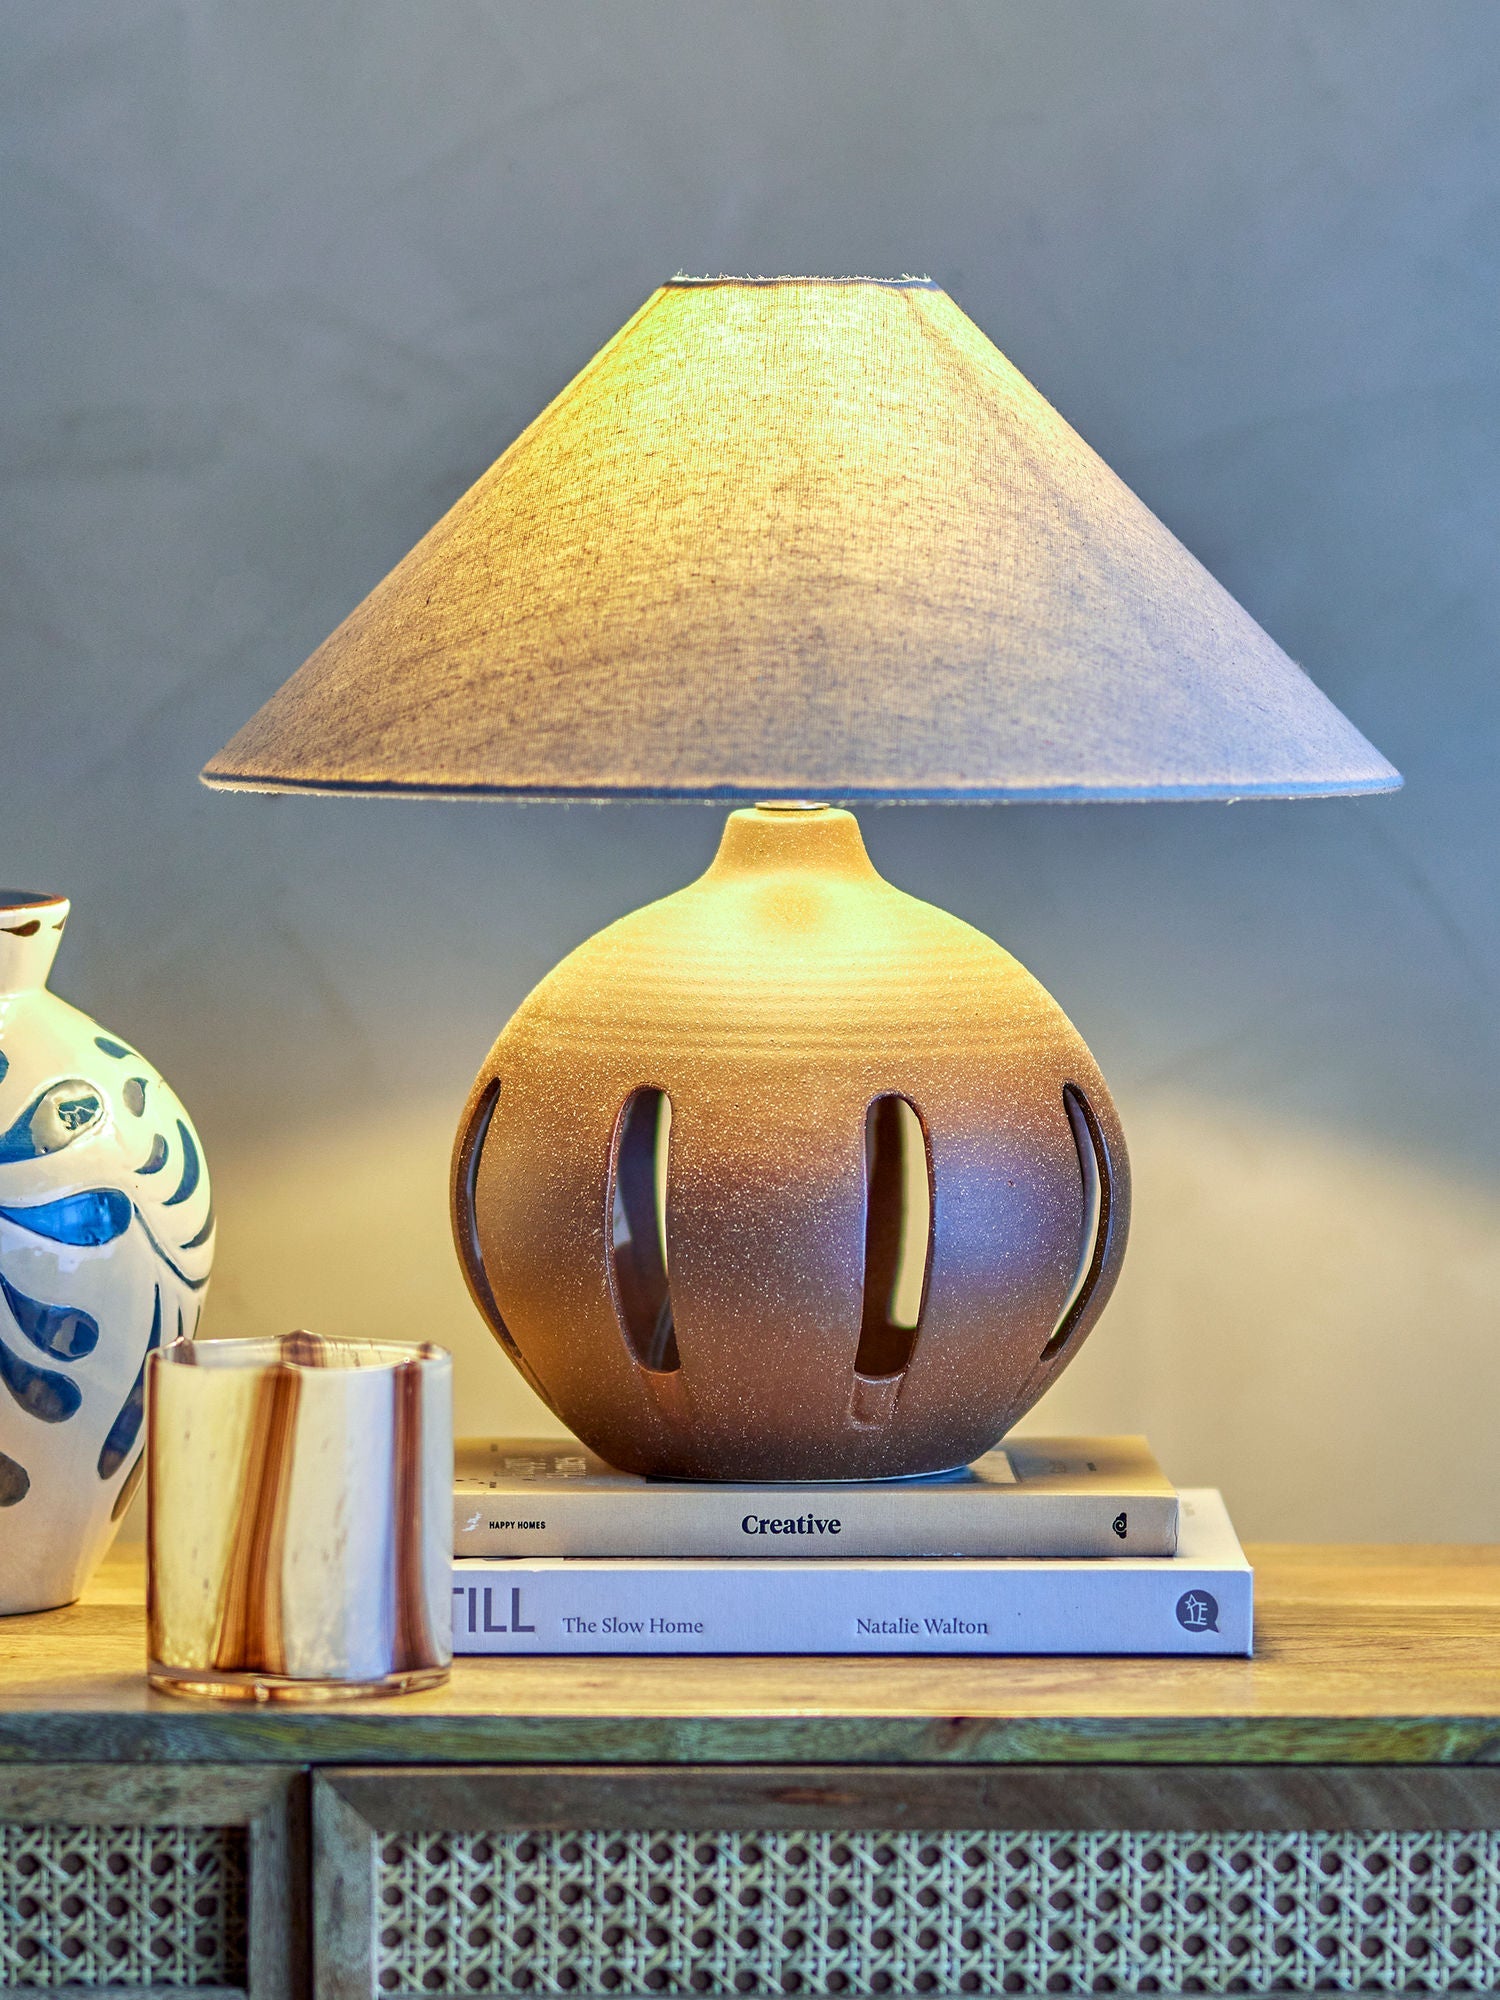 Lámpara de mesa de Bloomingville Liana, marrón, gres